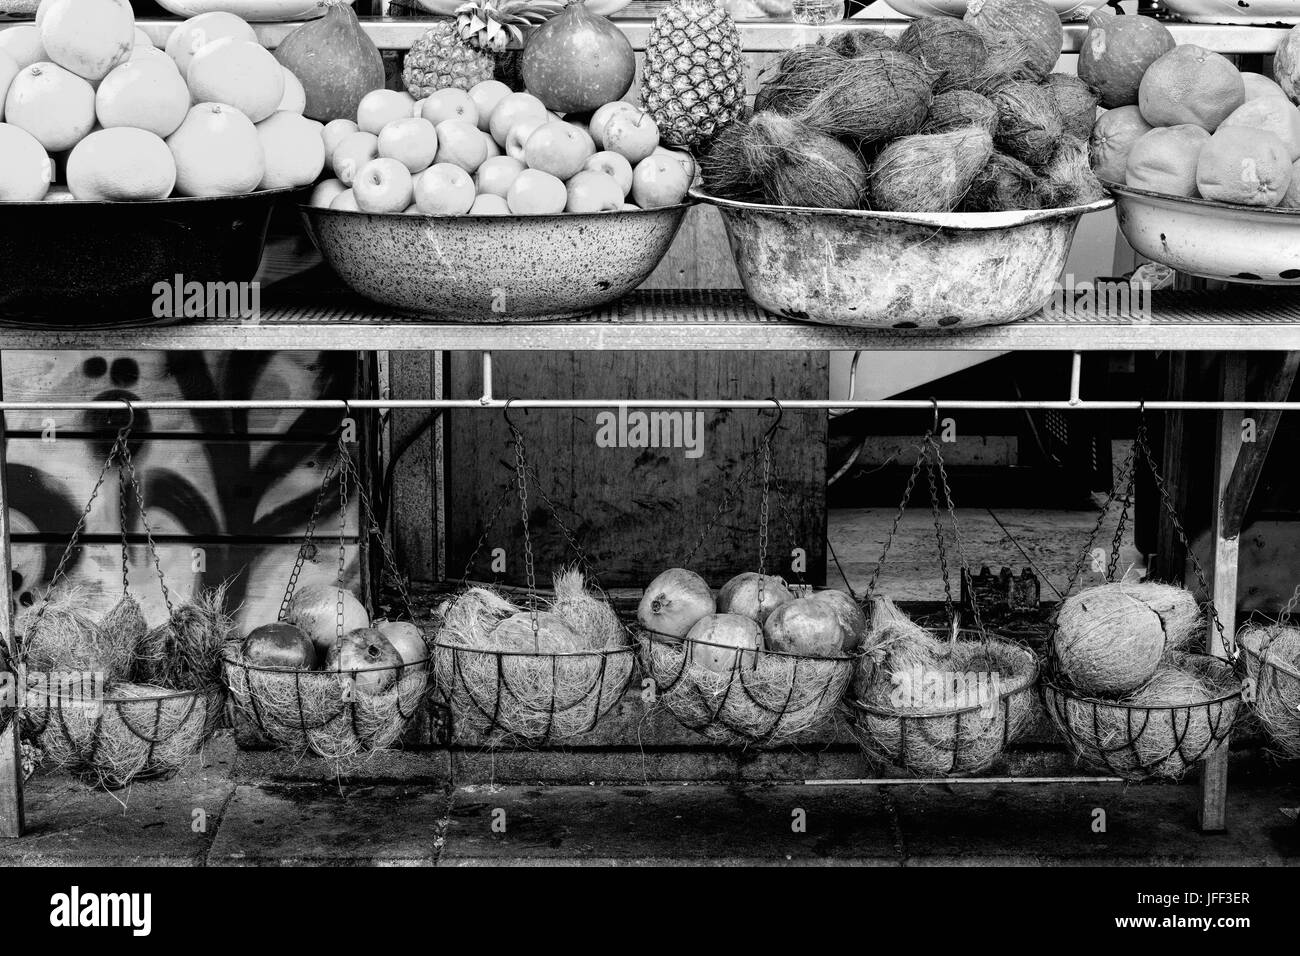 Mercato della frutta in Israele. Foto Stock